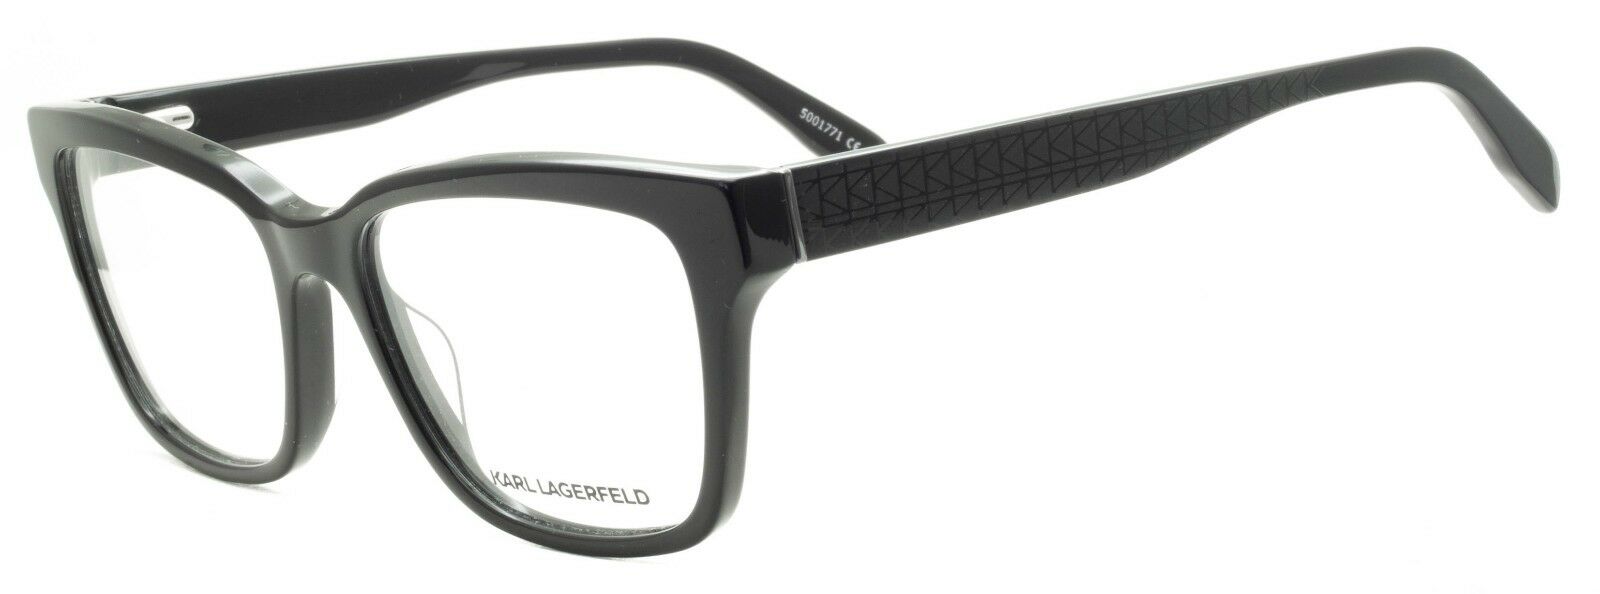 galerij Eindeloos Feat KARL LAGERFELD KL 42 52mm Eyewear FRAMES RX Optical Eyeglasses Glasses -  New - GGV Eyewear